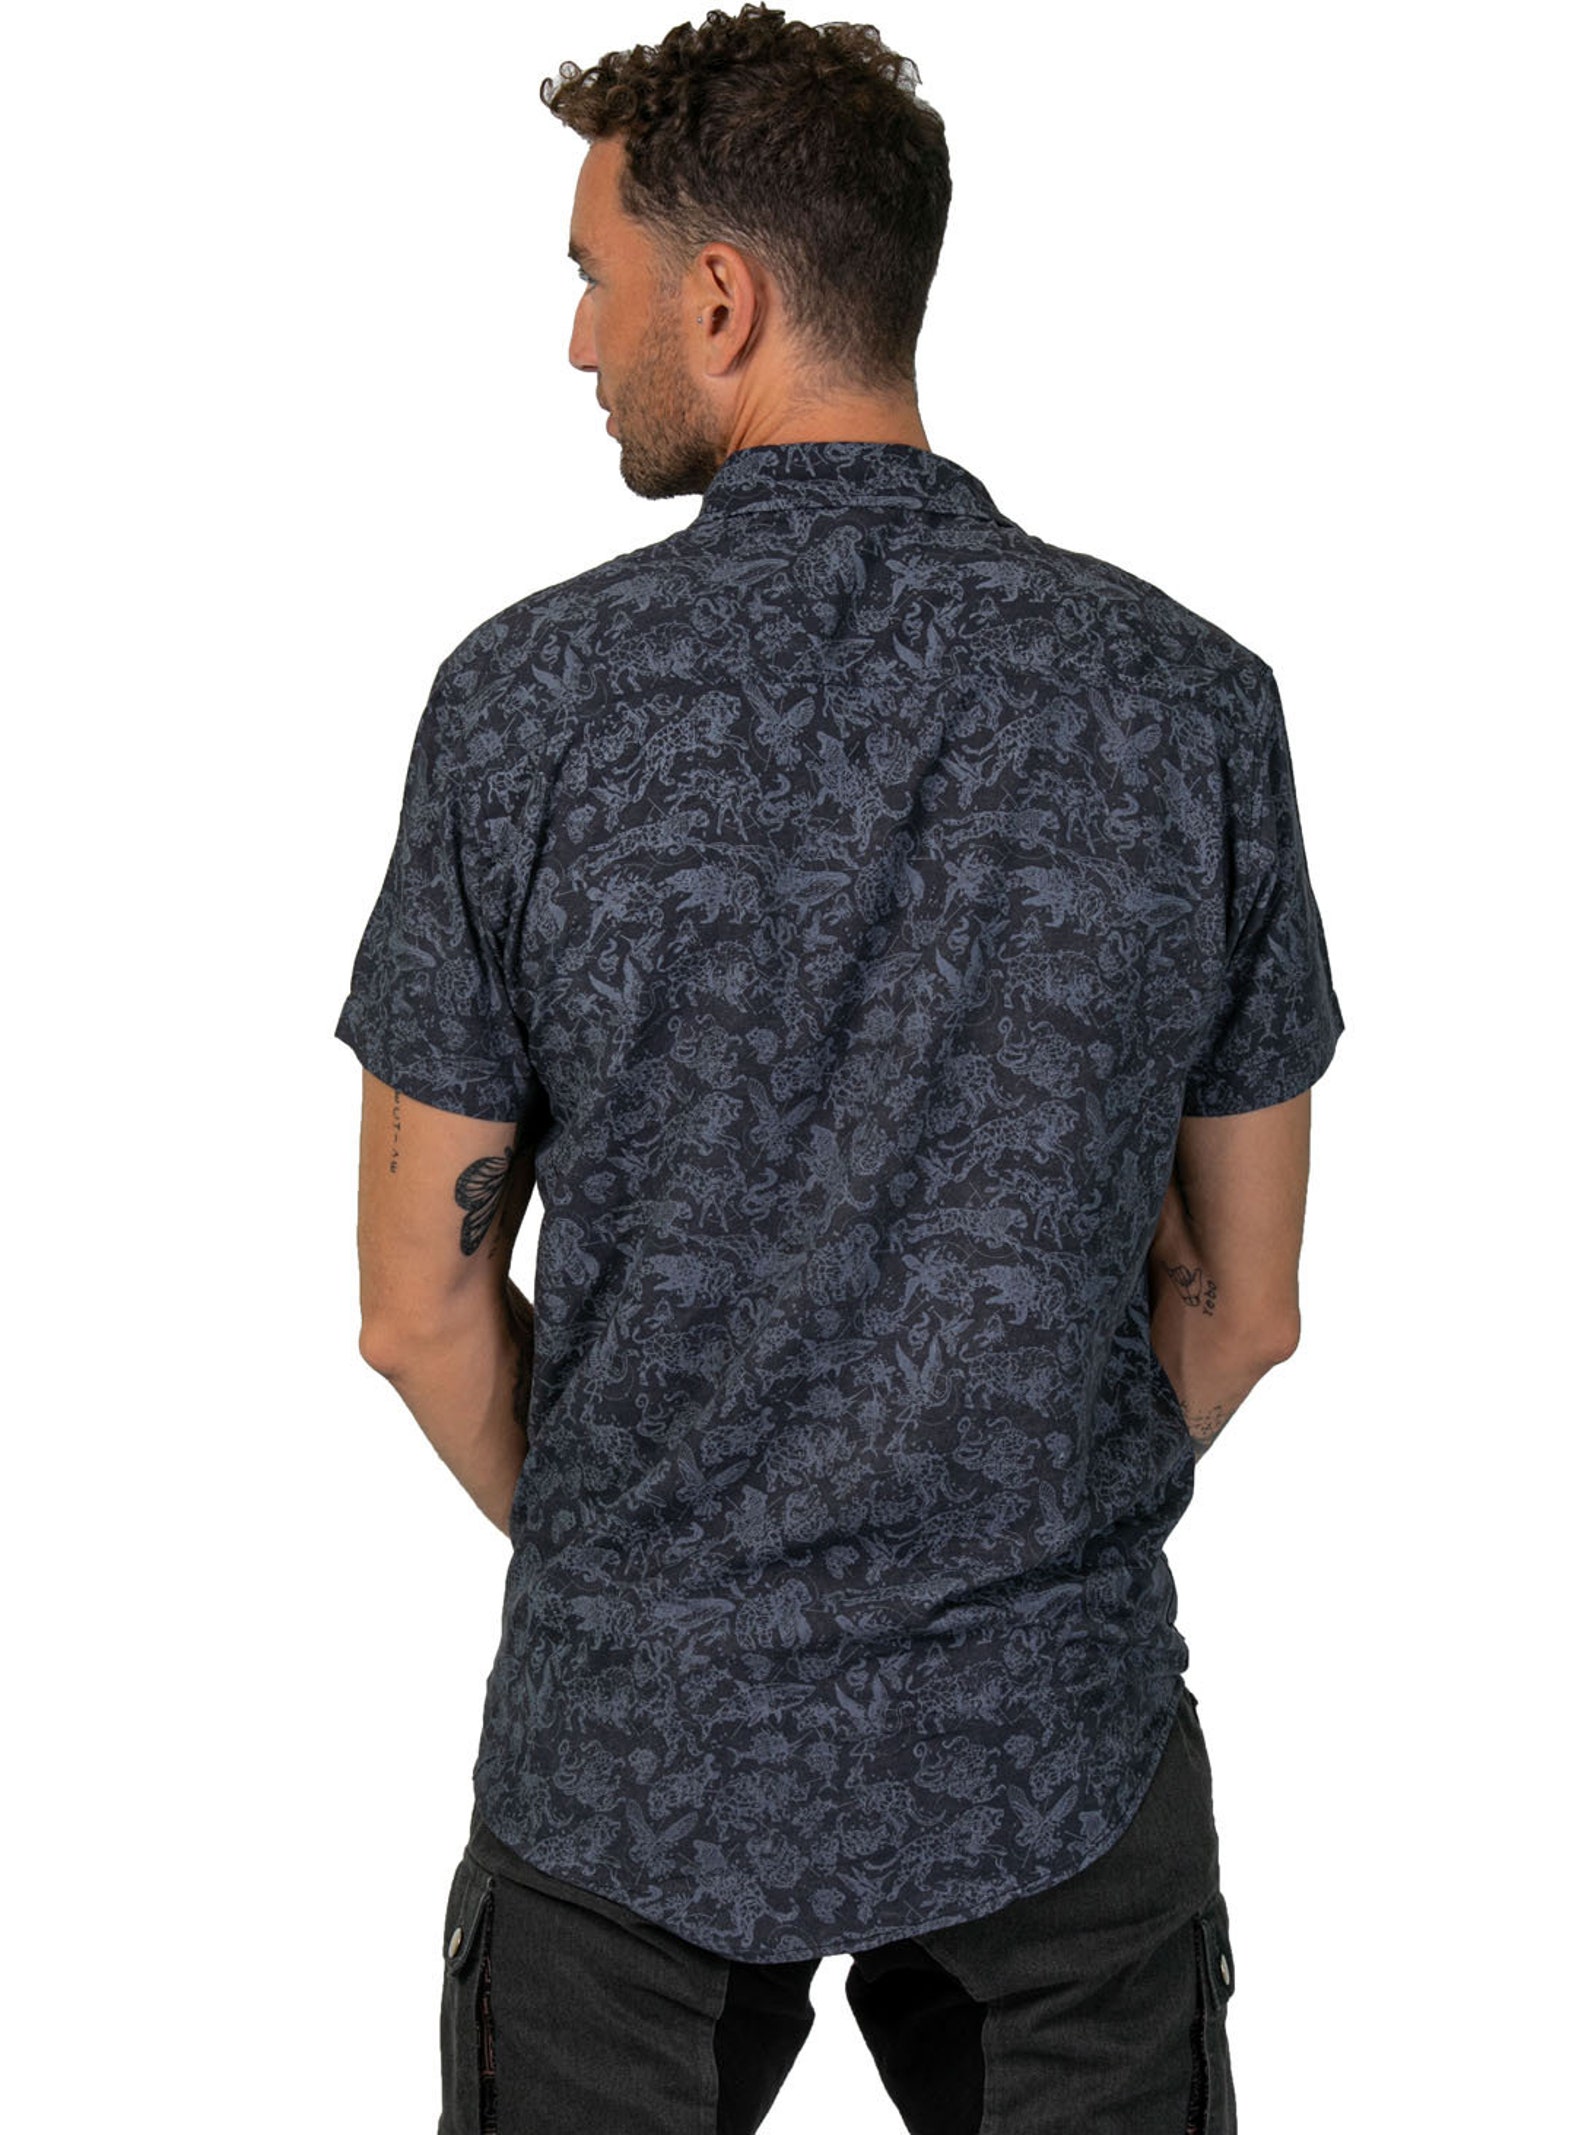 Men's Button Up Sleeveless Shirt Point Collar Shirt | Etsy